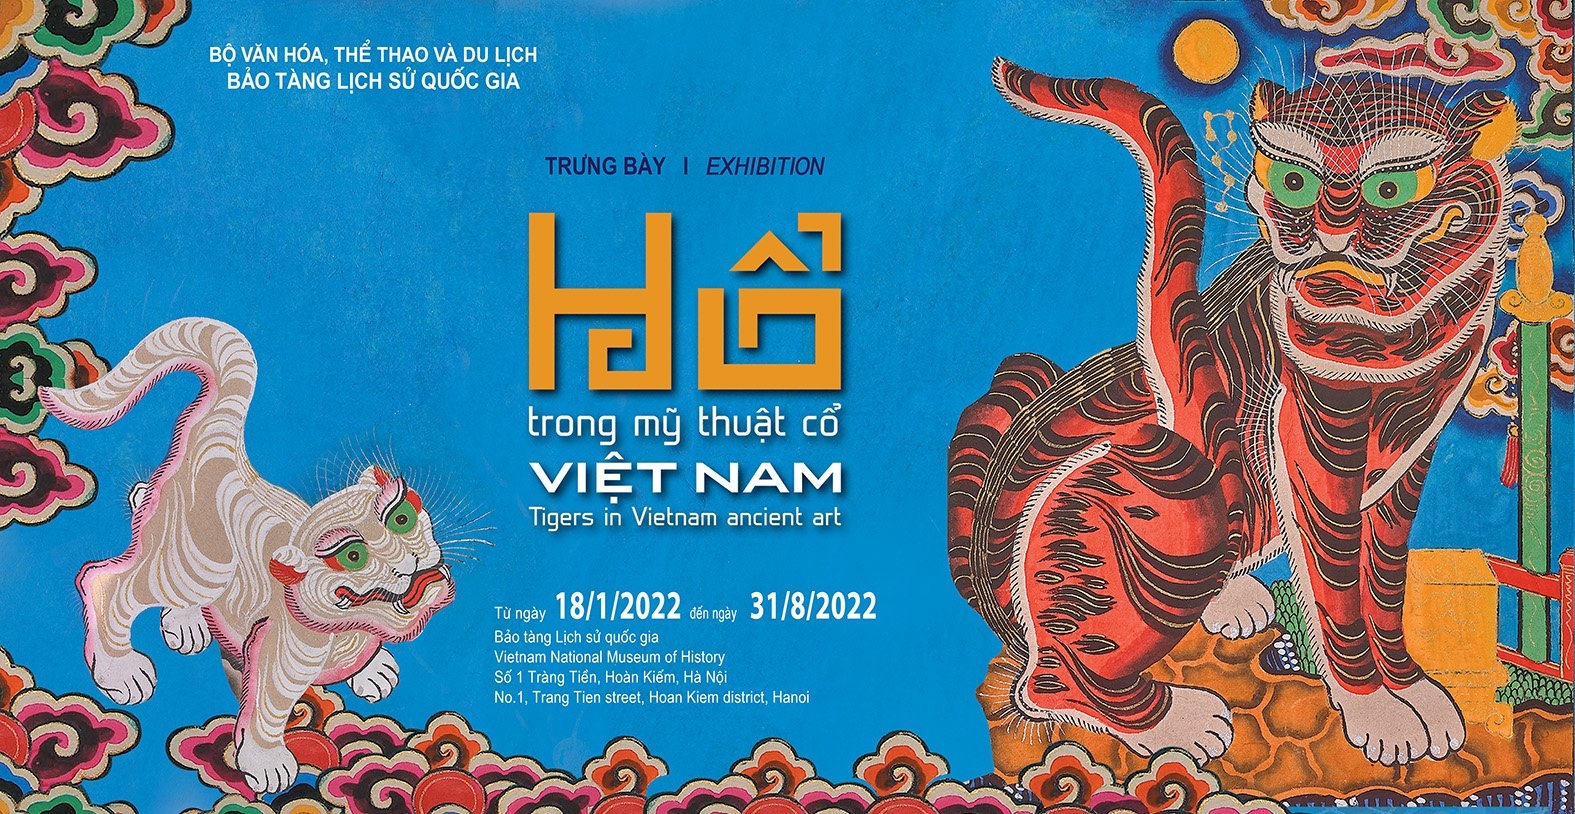 Hổ trong mỹ thuật cổ Việt Nam  